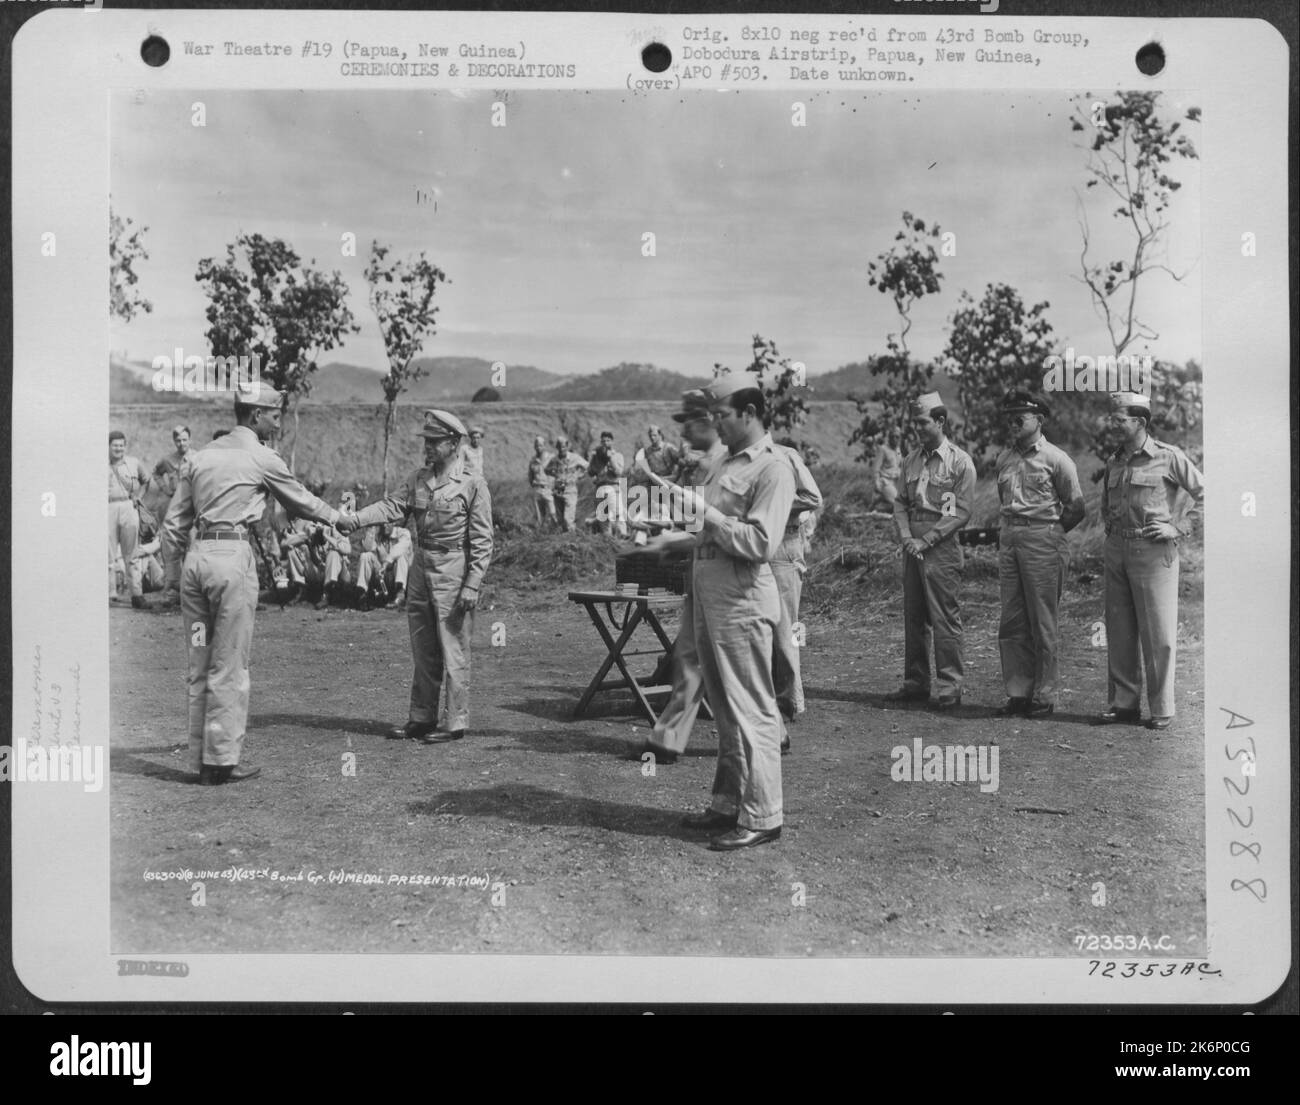 LT. General George C. Kenney gratuliert einem Mitglied der 43. Bomb Group, nachdem er ihm am 8. Juni 1943 eine Auszeichnung überreicht hatte. Flugplatz Dobodura, Papua, Neuguinea. Stockfoto